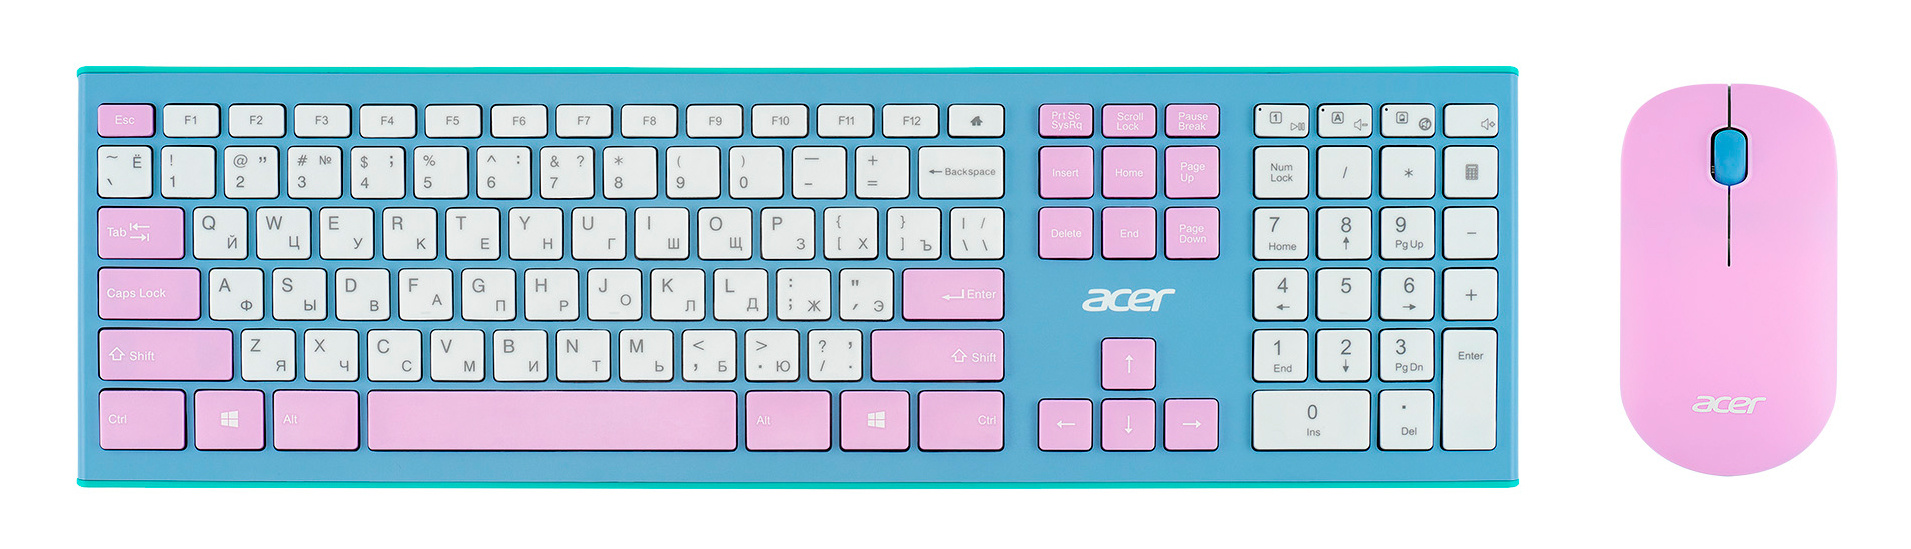 Клавиатура + мышь Acer OCC200 клав:фиолетовый/зеленый мышь:фиолетовый/зеленый USB беспроводная slim Multimedia (ZL.ACCEE.003)